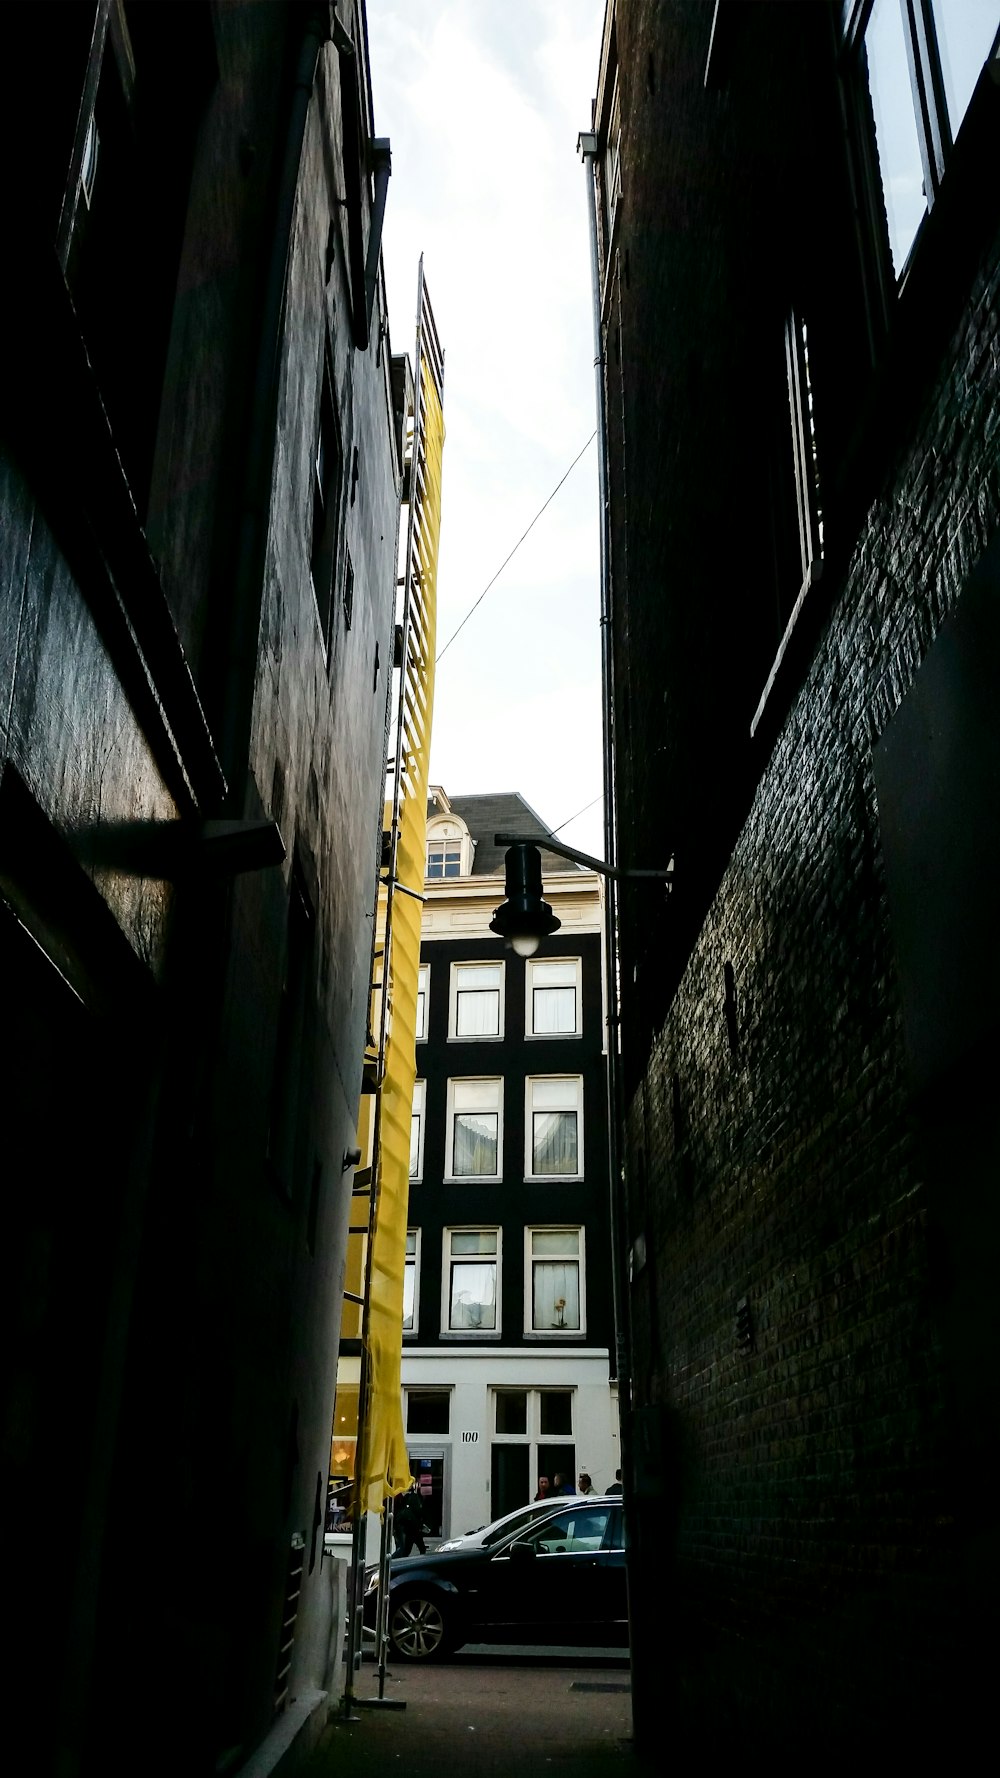 Véhicule noir garé à côté d’un immeuble